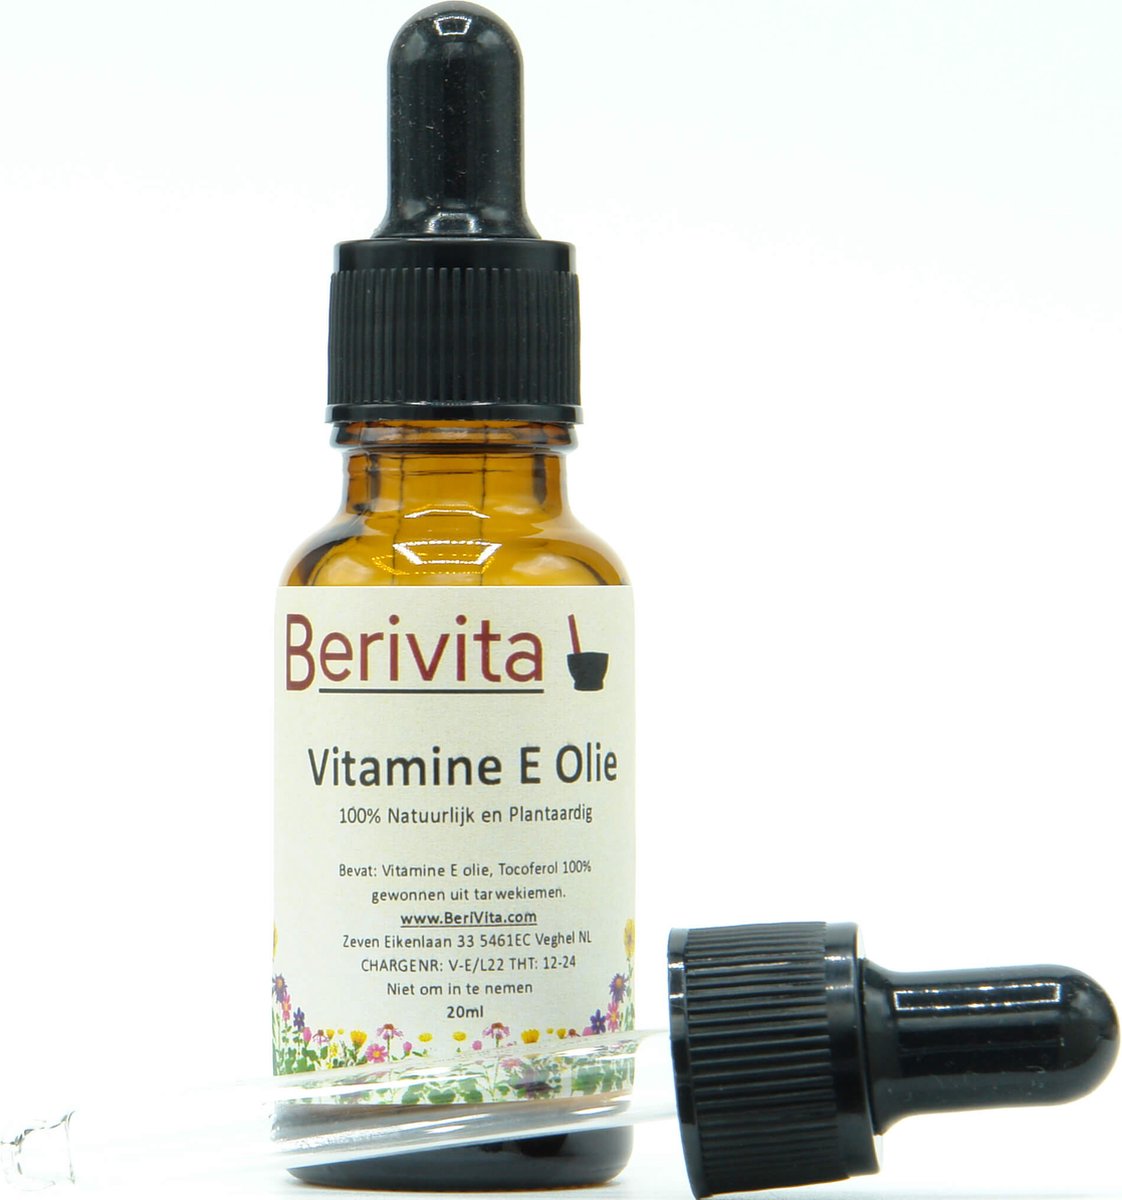 Vitamine E Olie 20ml Pipetfles - Voor Huid en Haar Producten - 100% Natuurlijke Tocoferol - Berivita